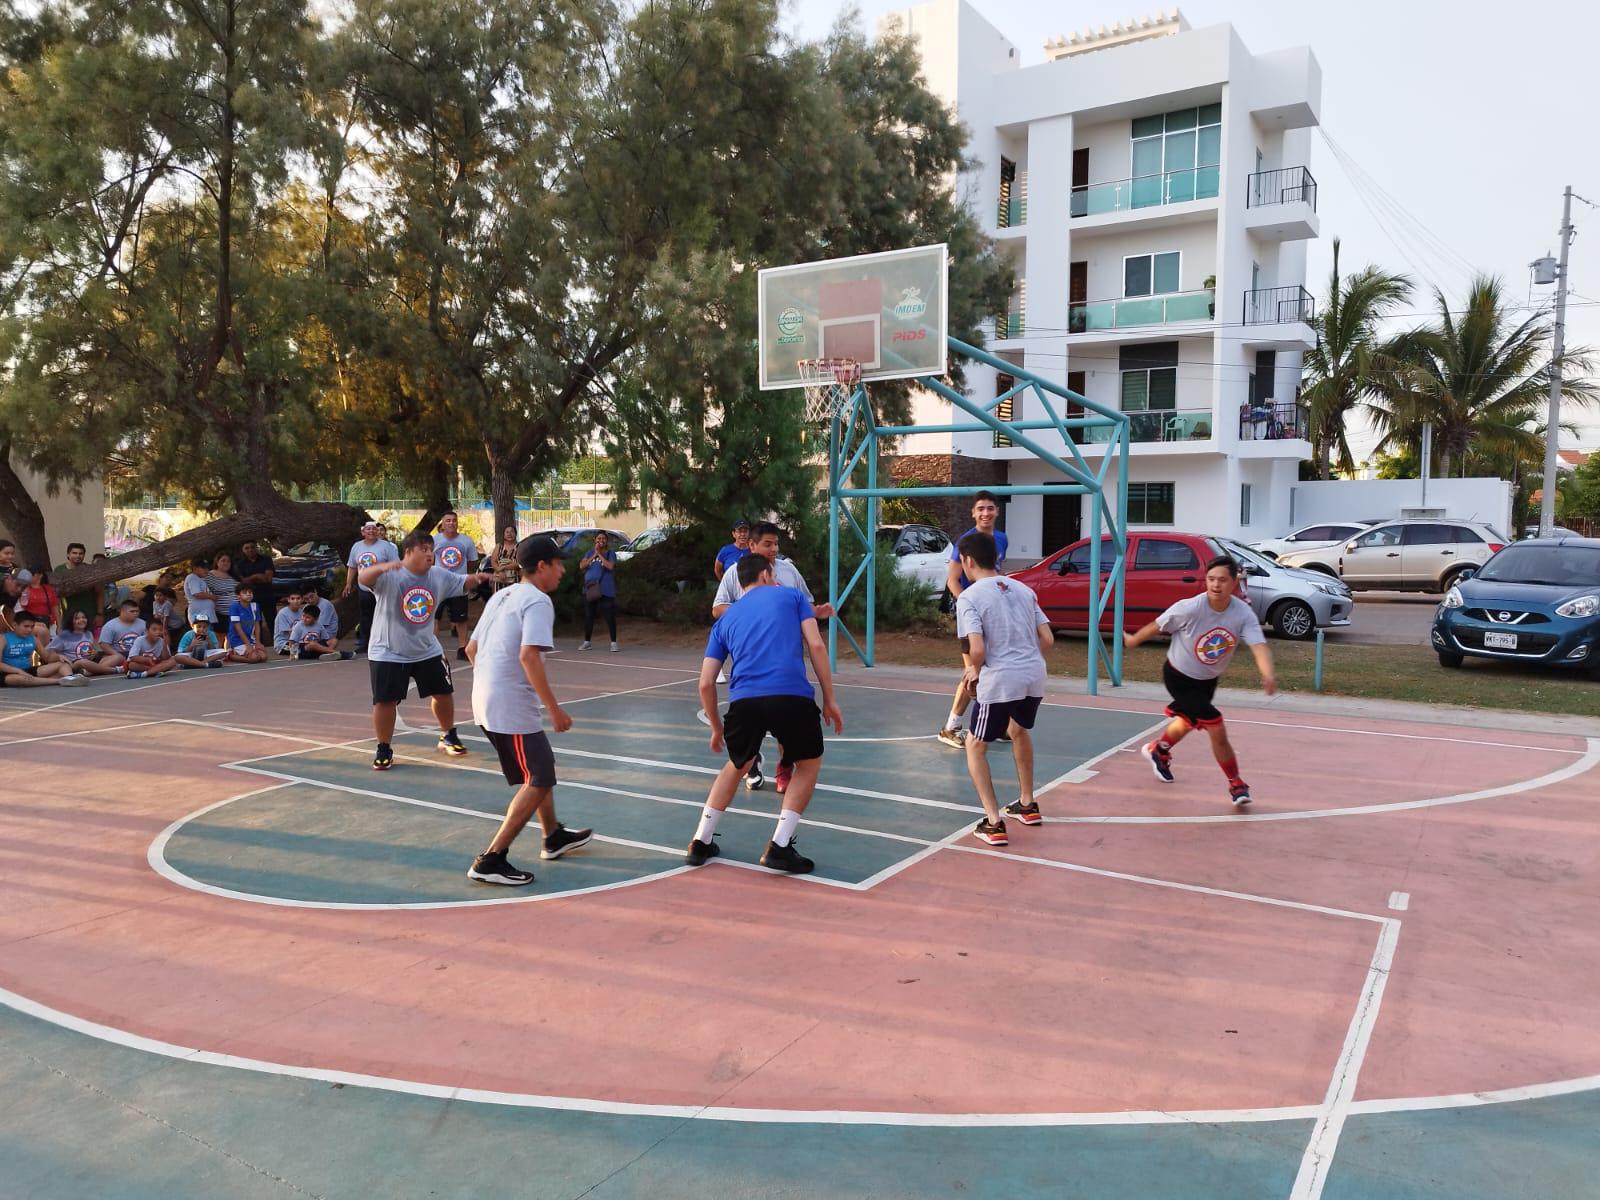 $!Piratas Basketball estrecha lazos de amistad con Súper Héroes Mazatlán